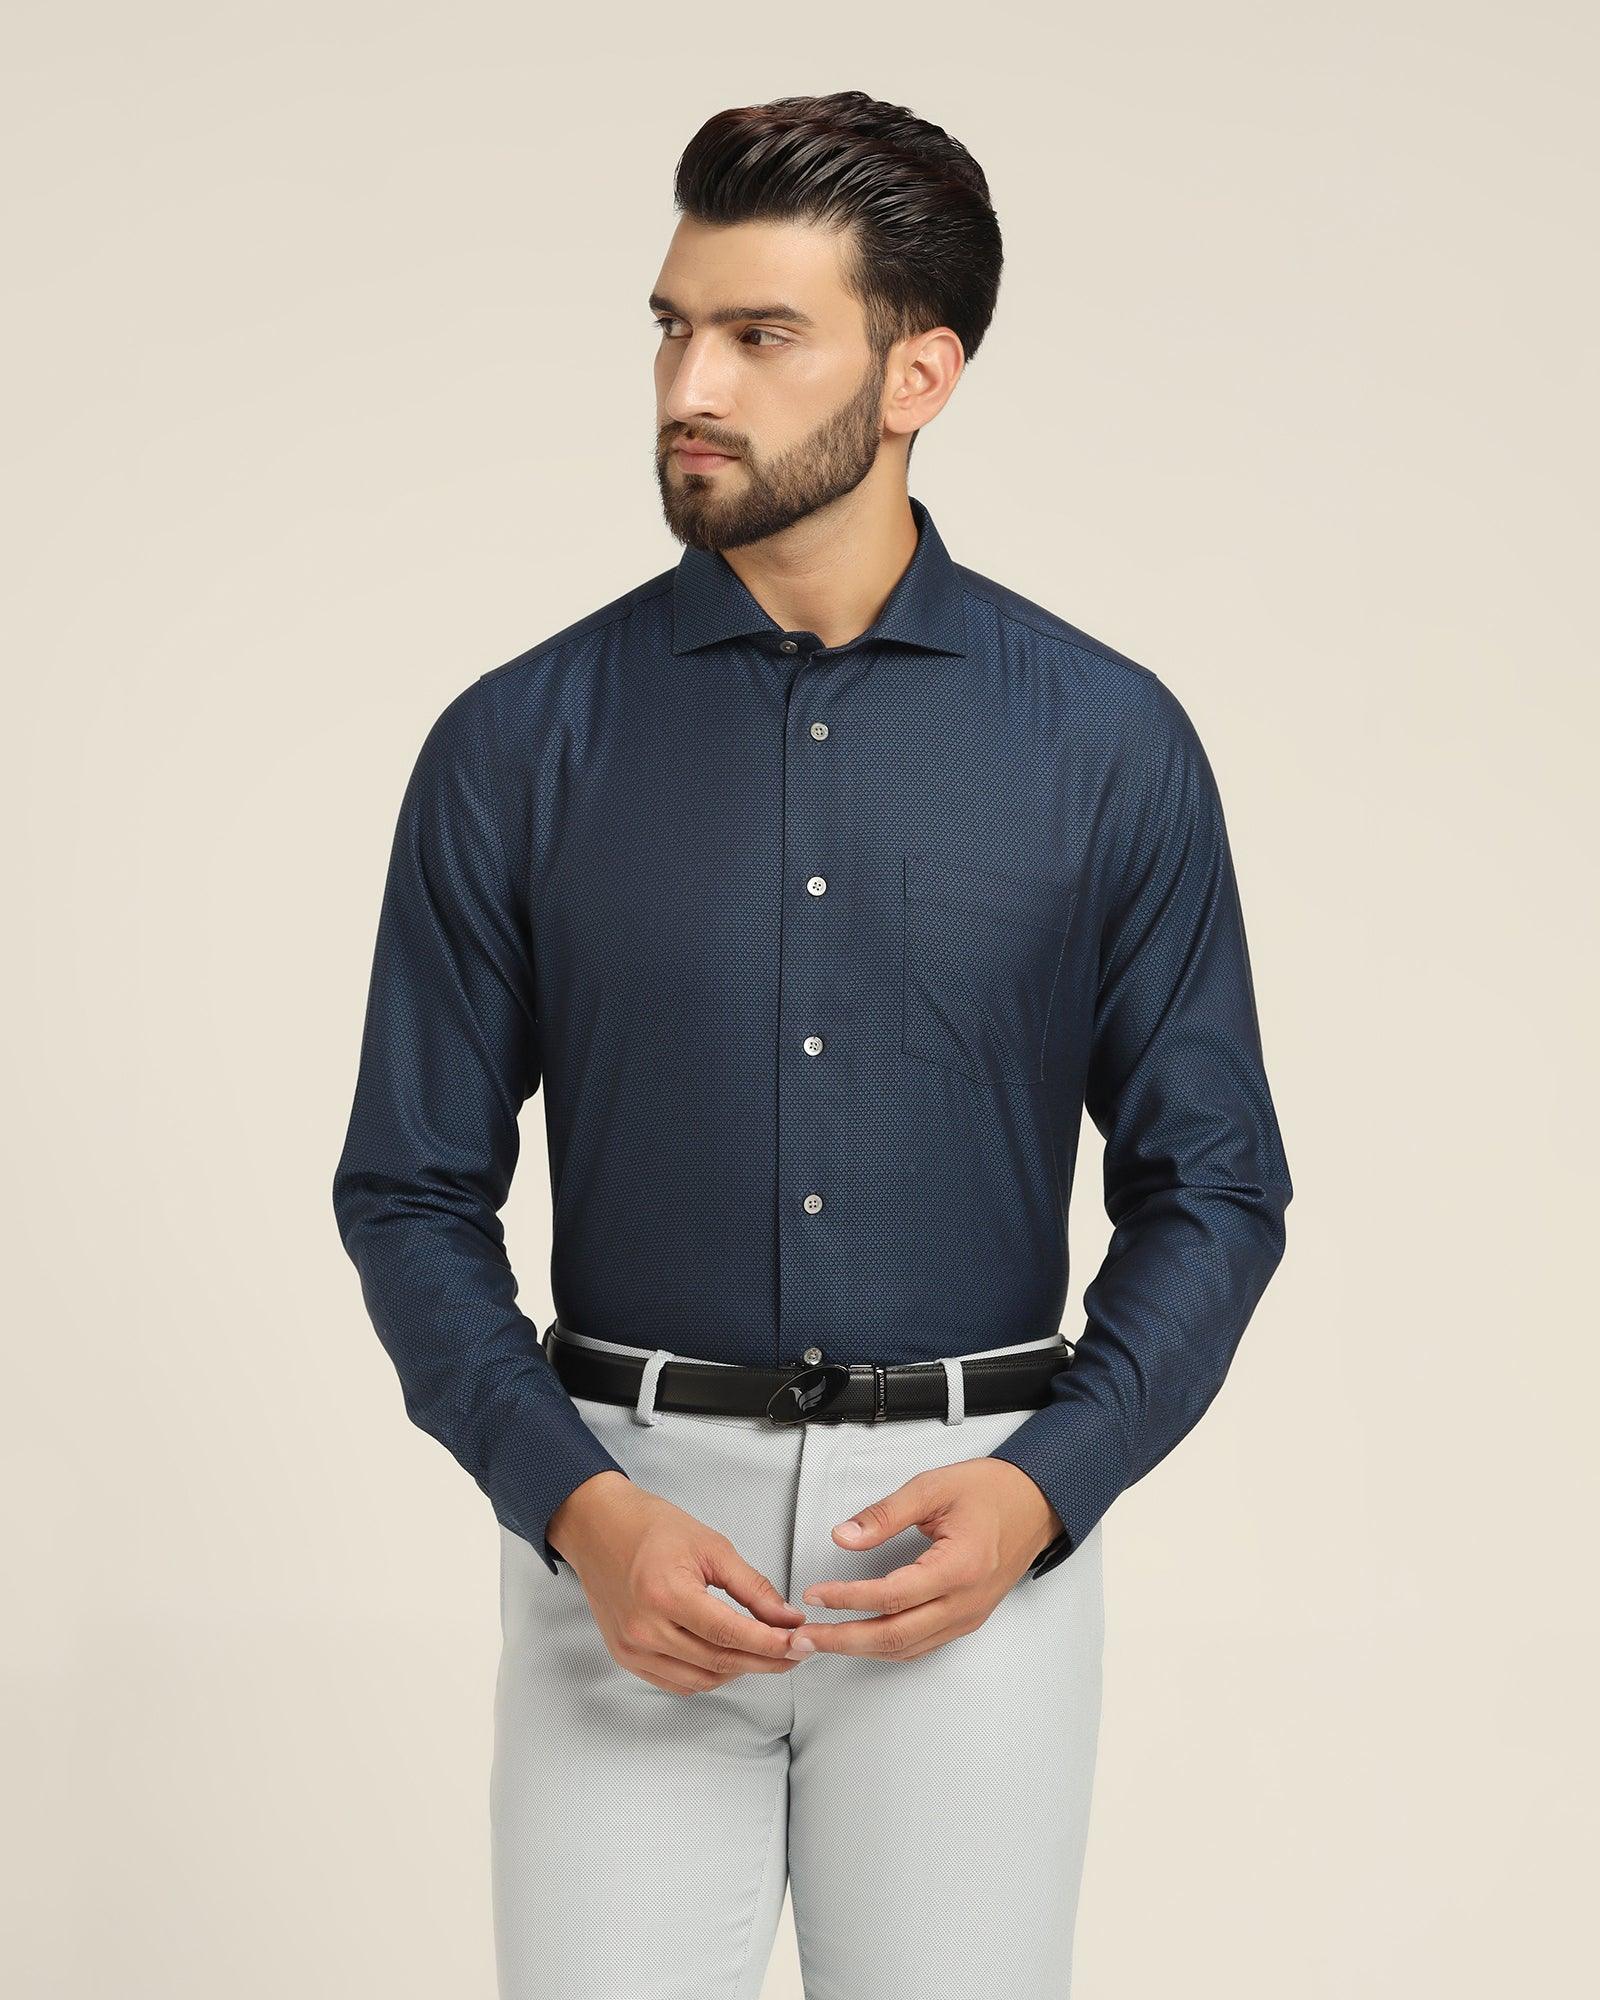 Luxe Formal Blue Textured Shirt - Alan